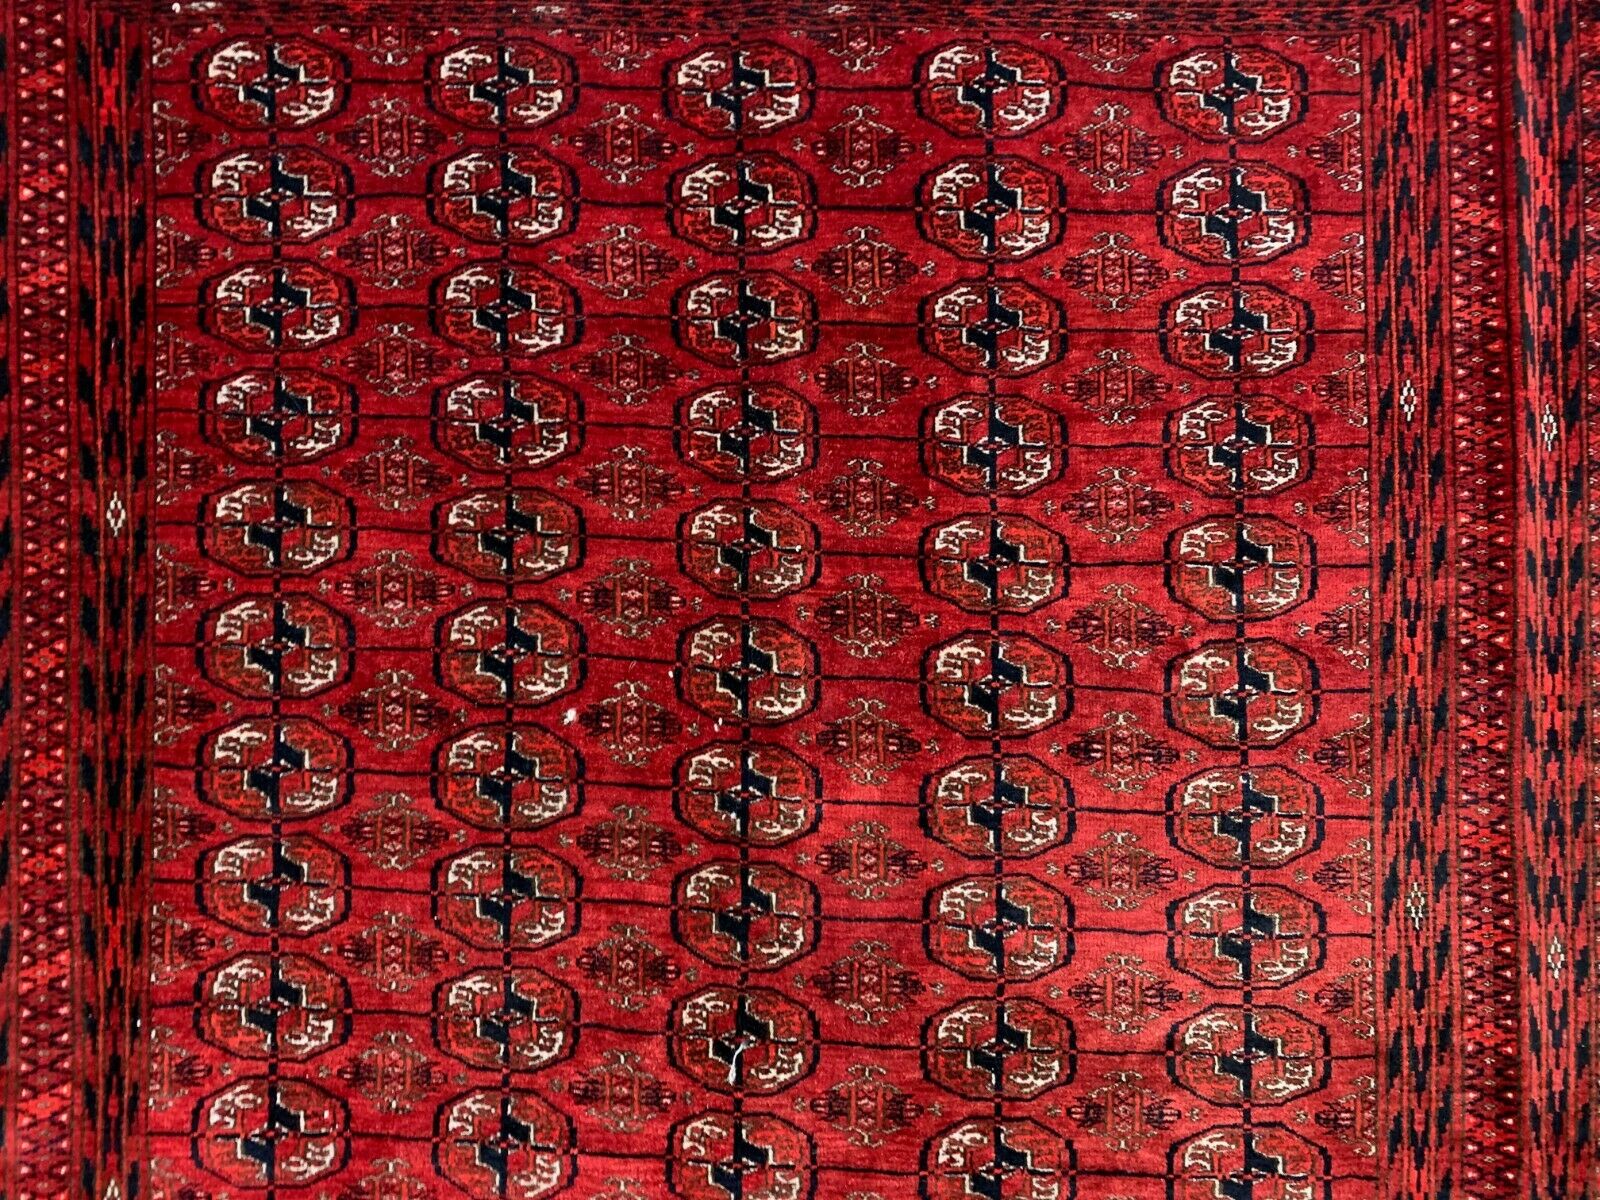 Vintage Afghan Turkoman village Rug 360x240 cm, Red, Black Tribal Large